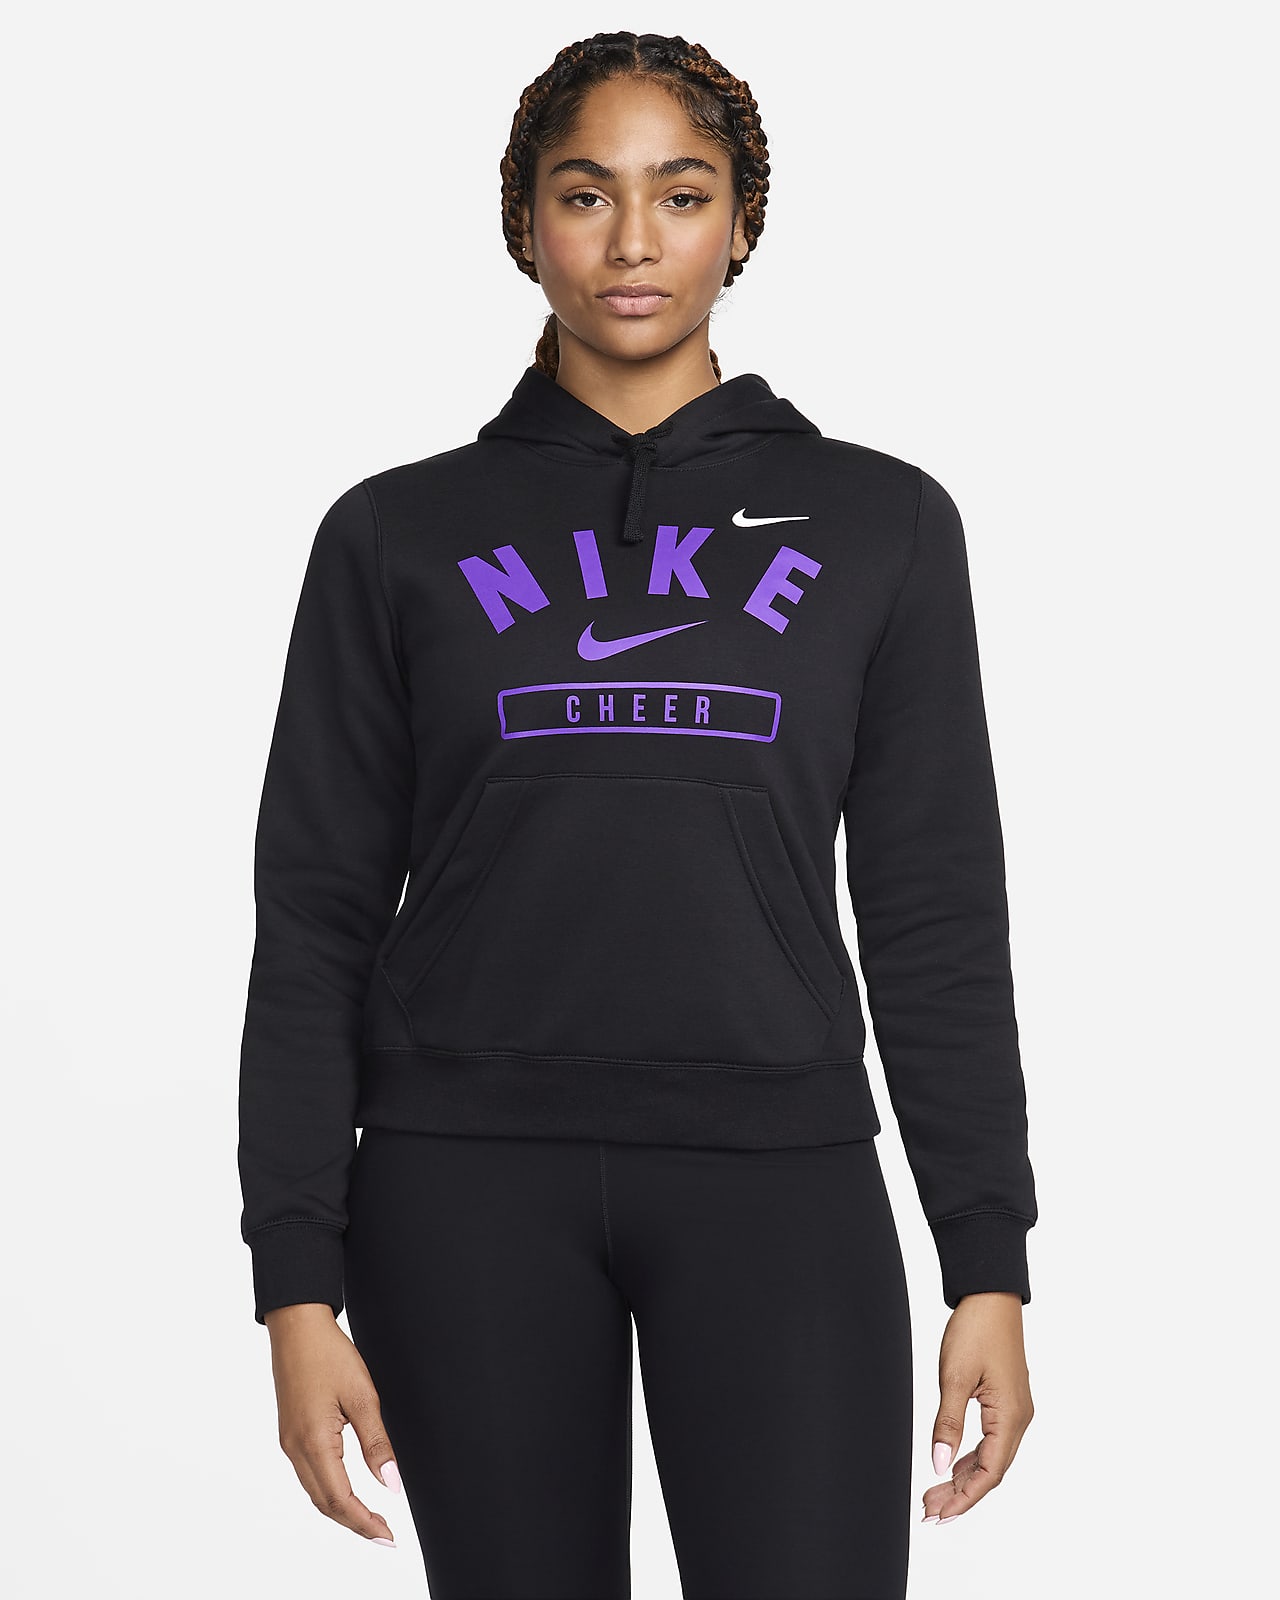 Nike Women's Cheer Pullover Hoodie